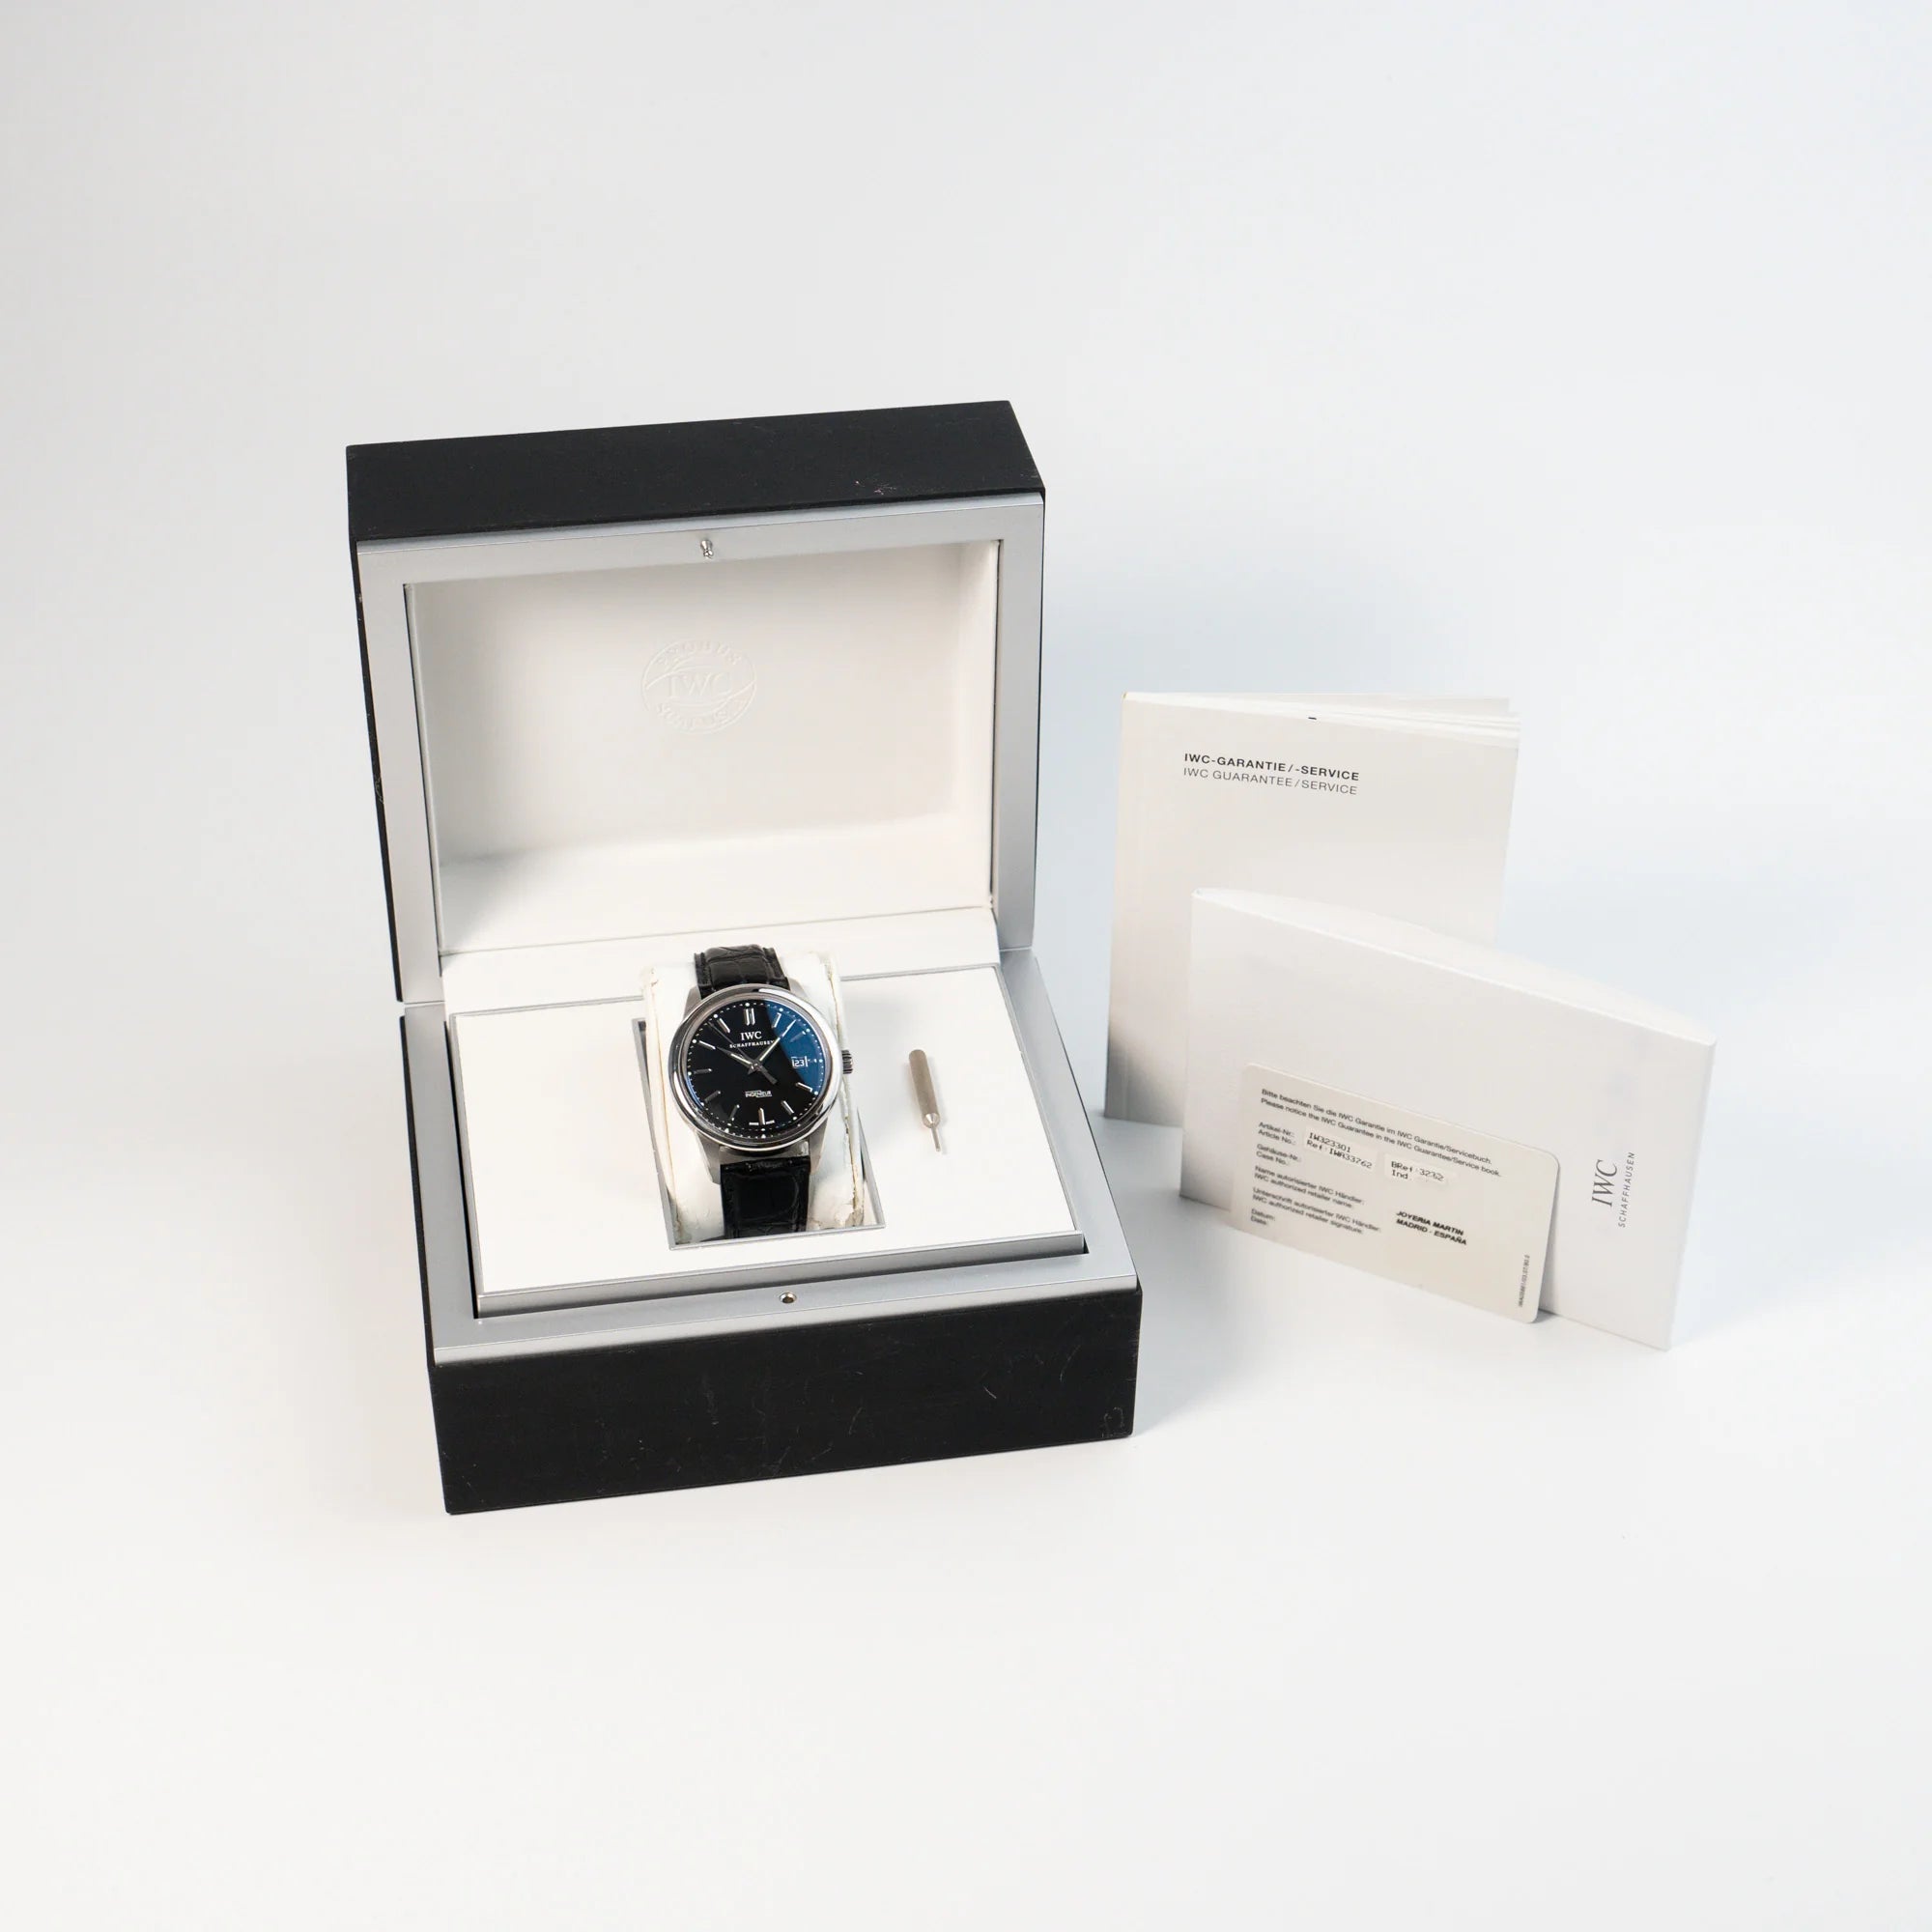 IWC Schaffhausen Uhr "Ingenieur" mit der Referenz IW323301 mit schwarzem Zifferblatt zusammen mit dem Lieferumfang, bestehend aus Box und Papieren